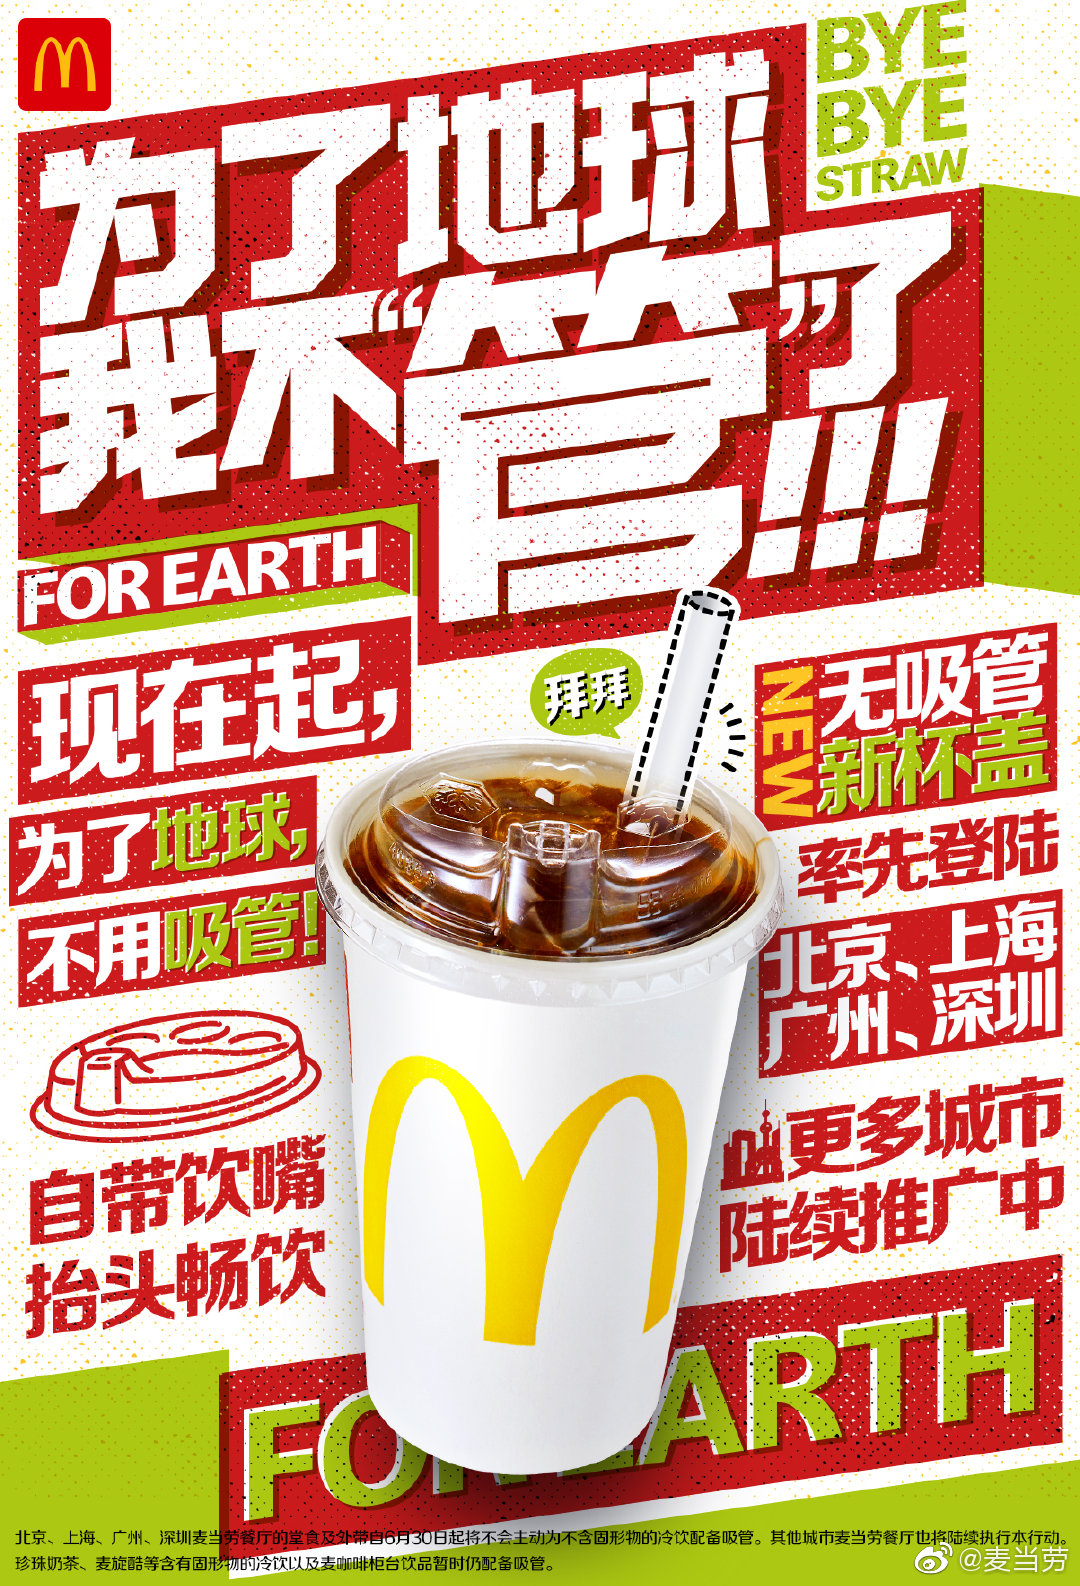 麦当劳中国宣布逐步停用塑料吸管 无吸管新杯盖亮相